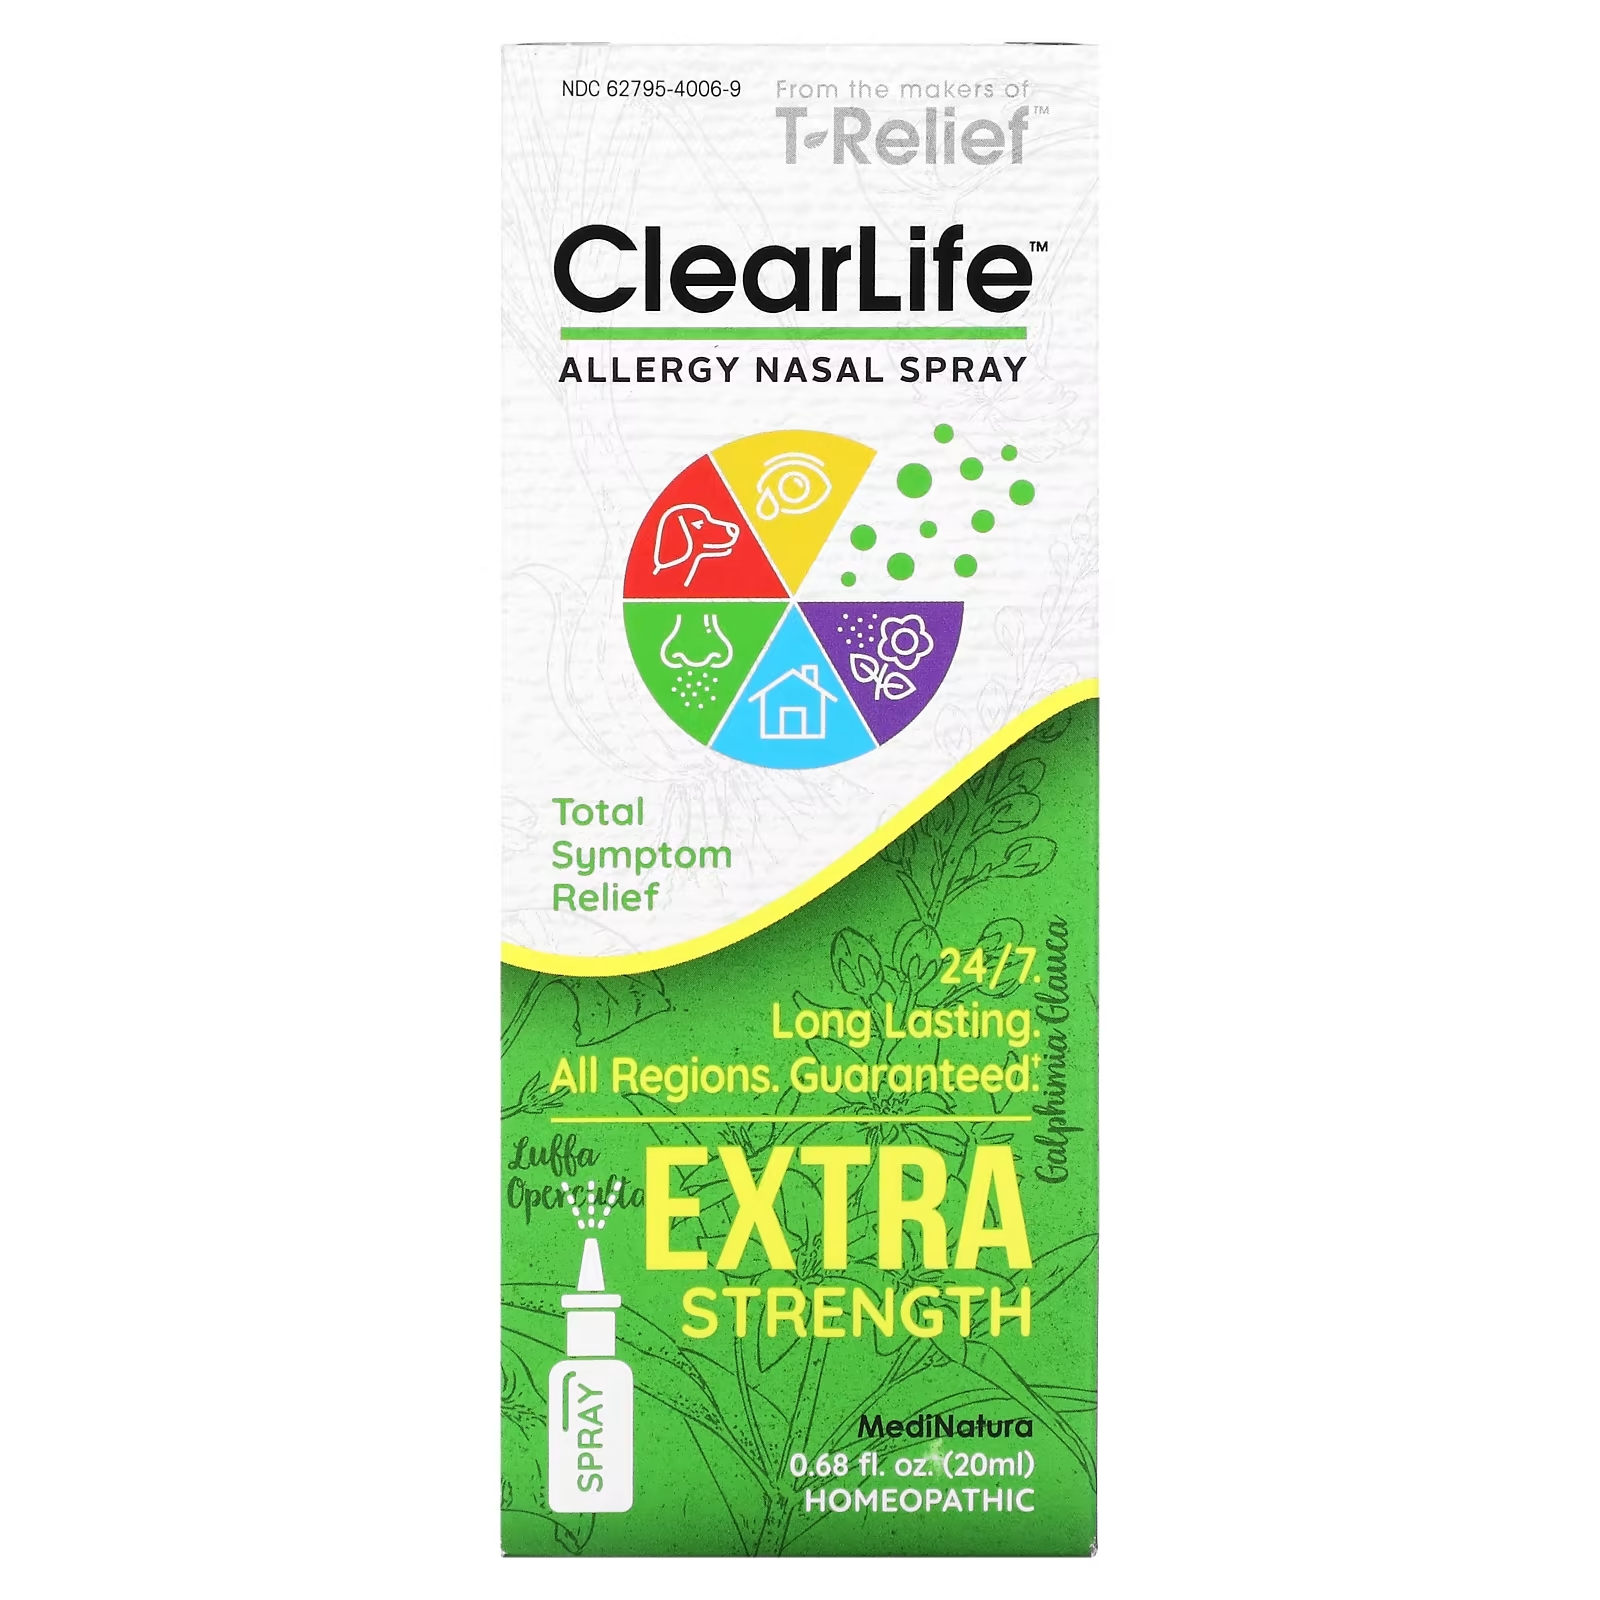 MediNatura ClearLife назальный спрей против аллергии повышенной силы действия, 20 мл